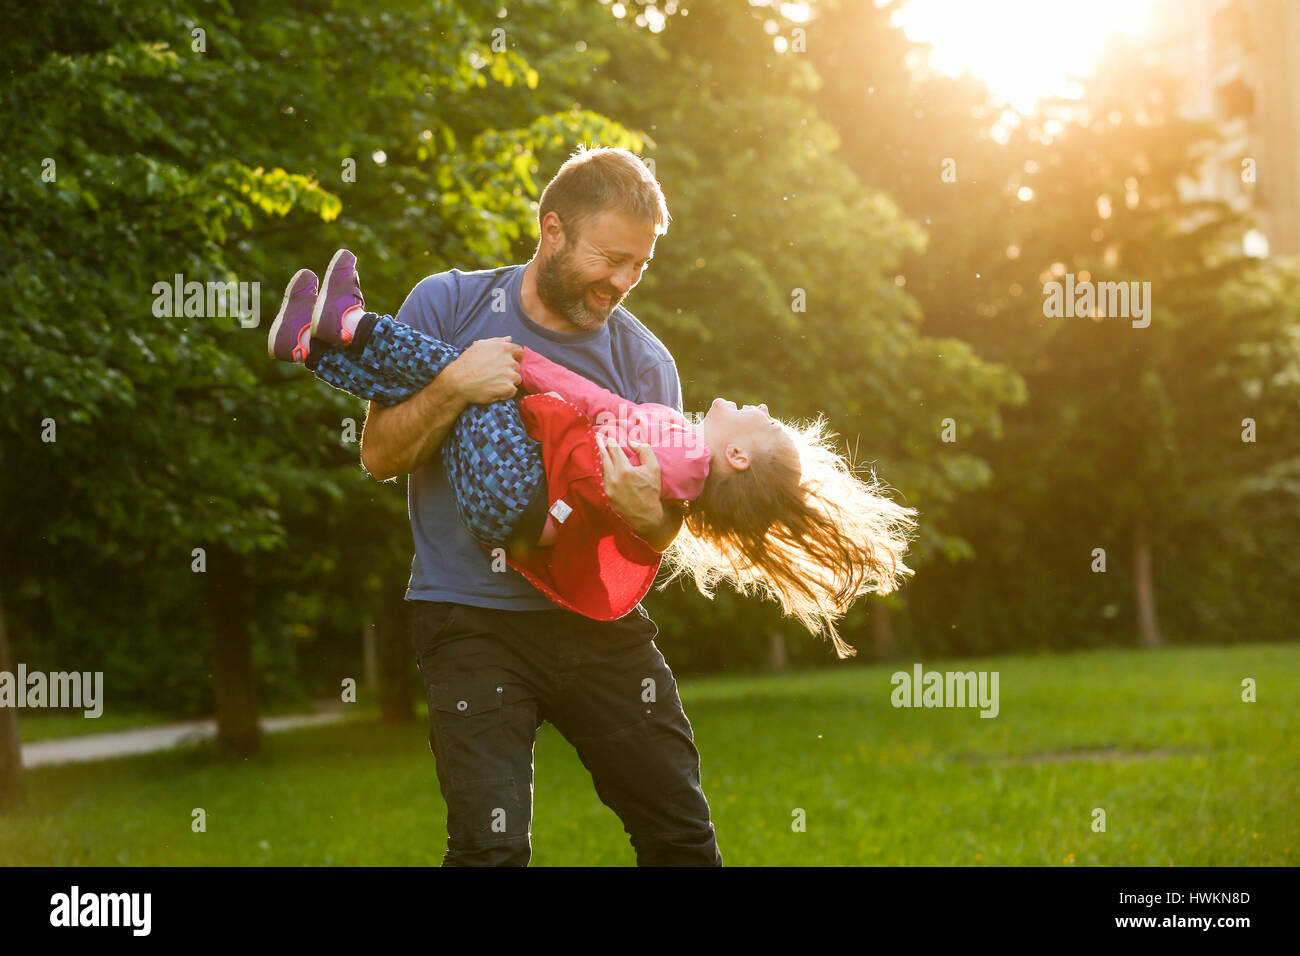 Vater seiner Tochter im Kreise drehen, kleben, spielen, Spaß in der Natur an einem hellen, sonnigen Tag gewidmet. Elternschaft, Lebensstil, Erziehung, Kinder Stockfoto